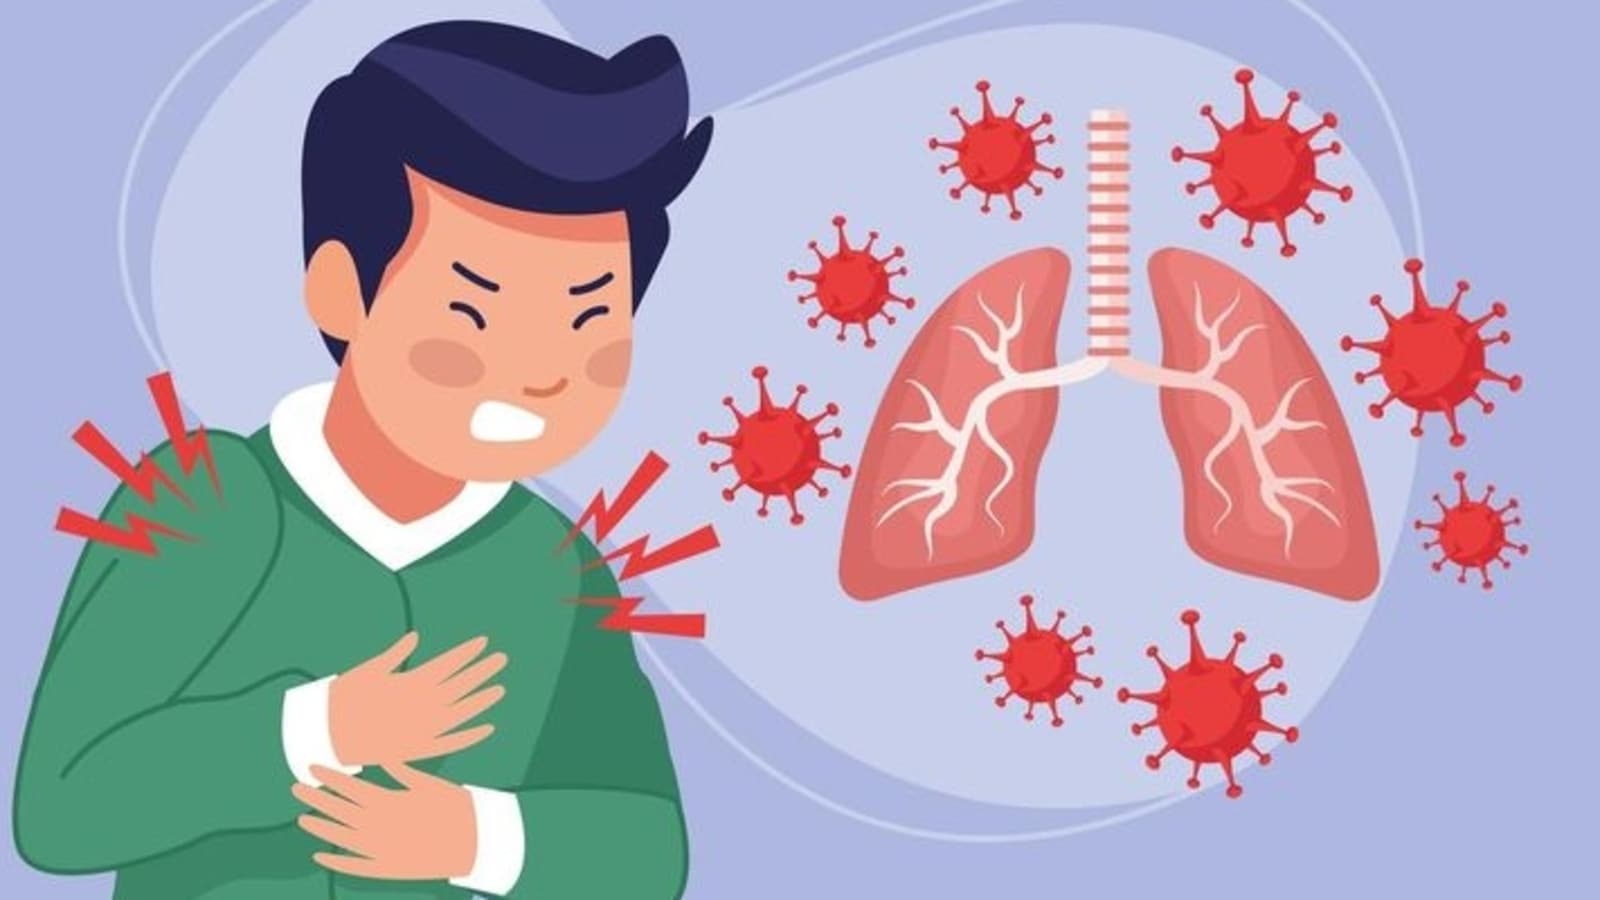 फुफ्फुसीय क्षय रोग: टीबी के लक्षण, जोखिम, उपचार और रोकथाम को समझना